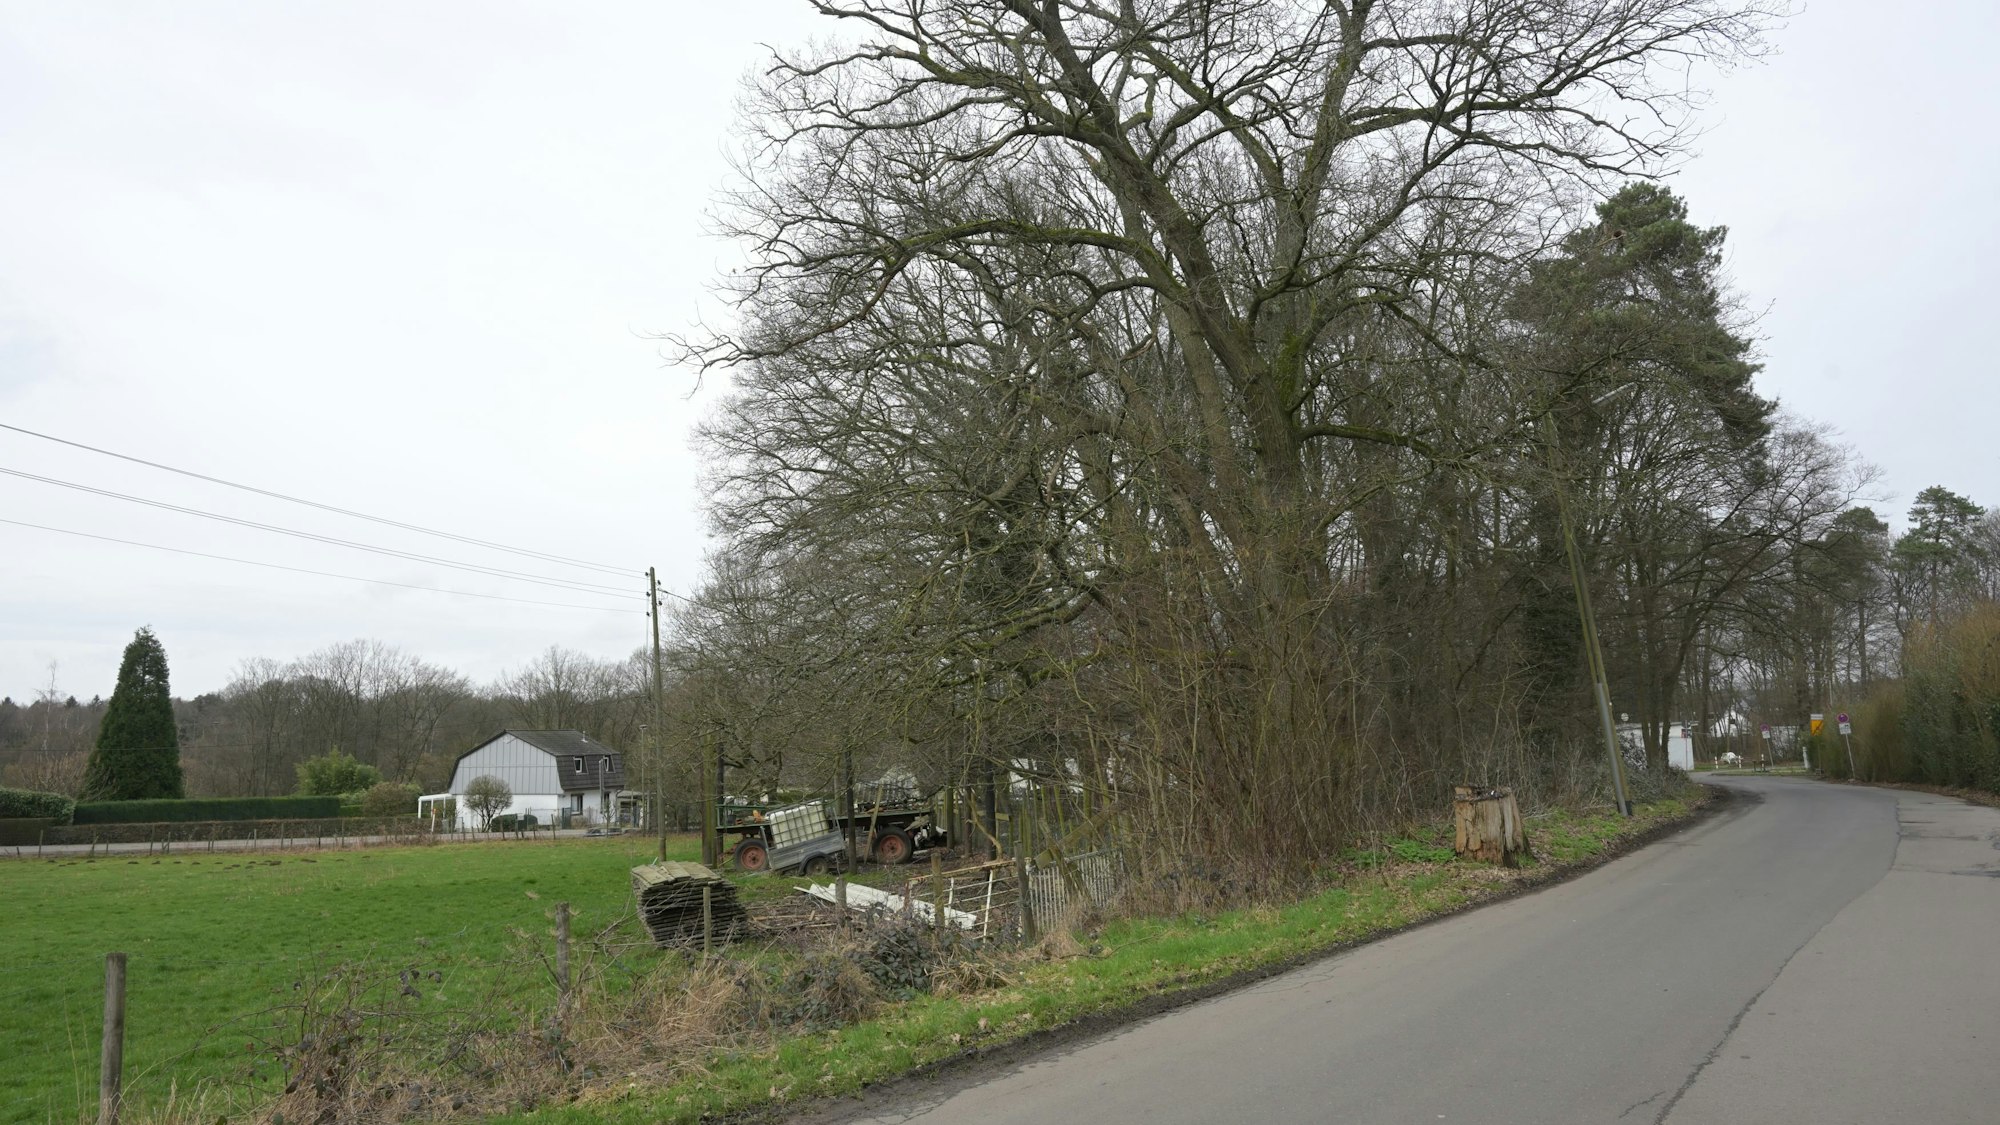 Eine Wiese an einer Straße, seitlich stehen landwirtschaftliche Geräte, die Straße wird von Bäumen gesäumt.